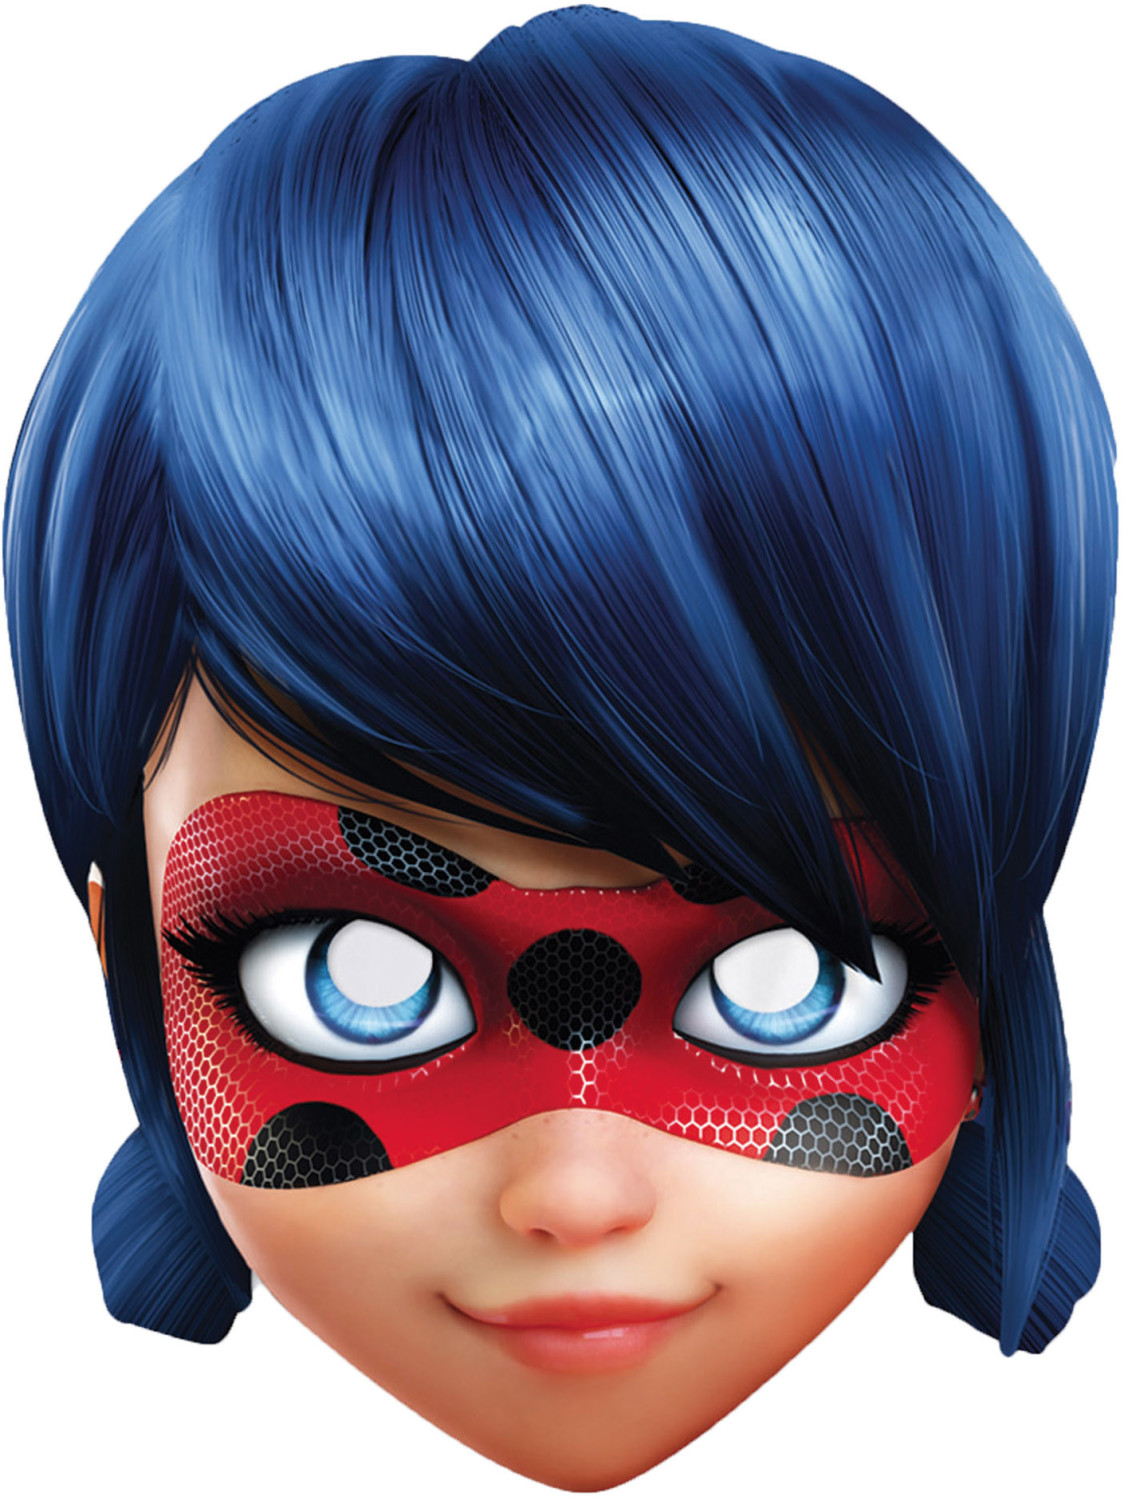 Rubie's Masque Miraculous Ladybug au meilleur prix sur